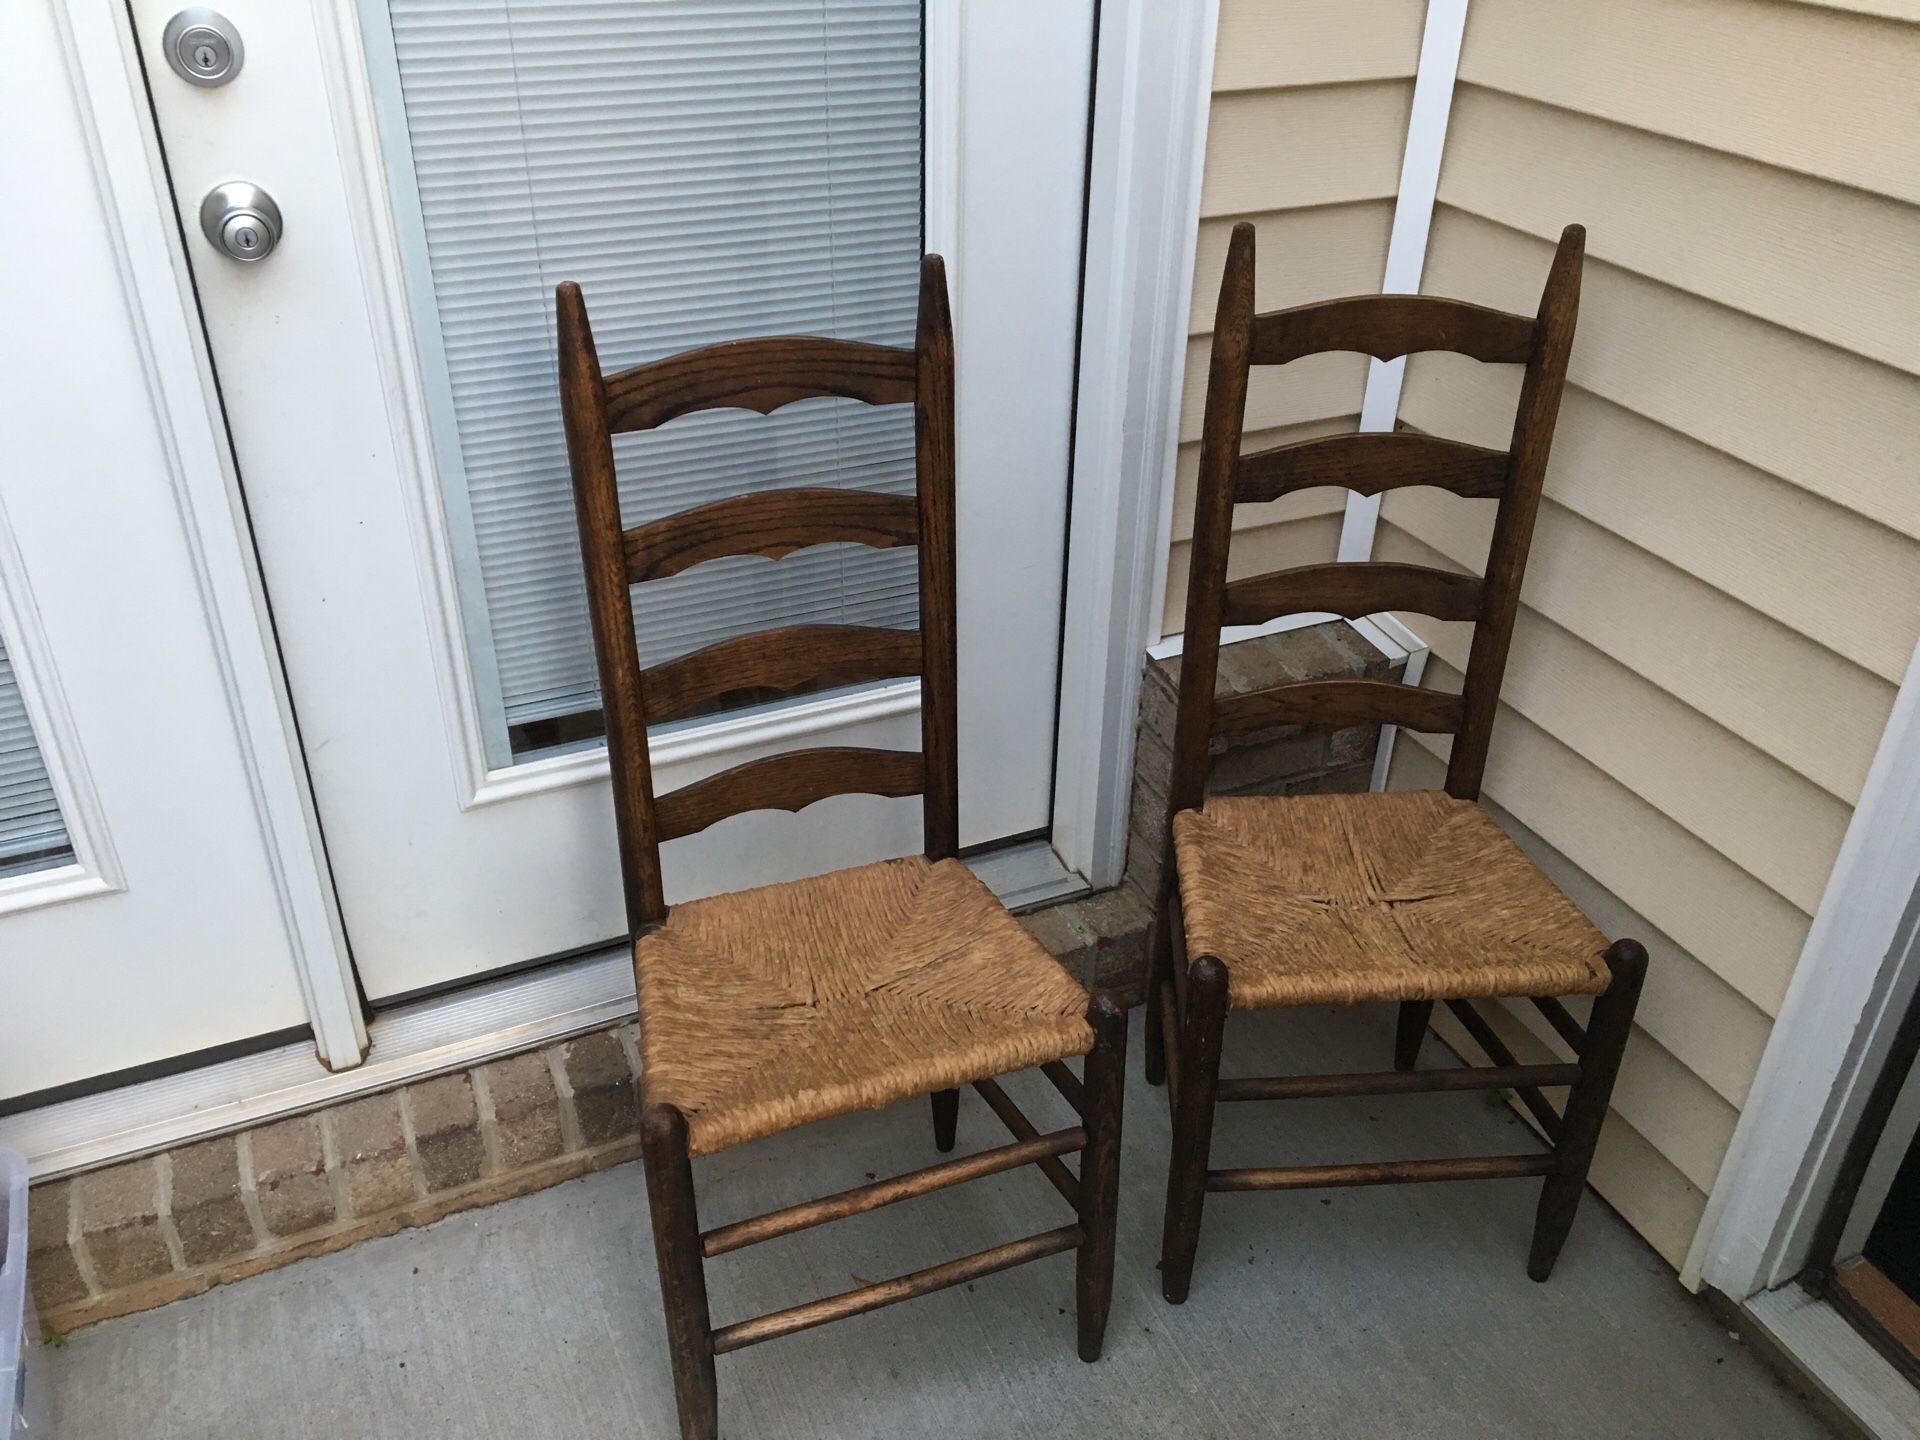 2 latterback chairs